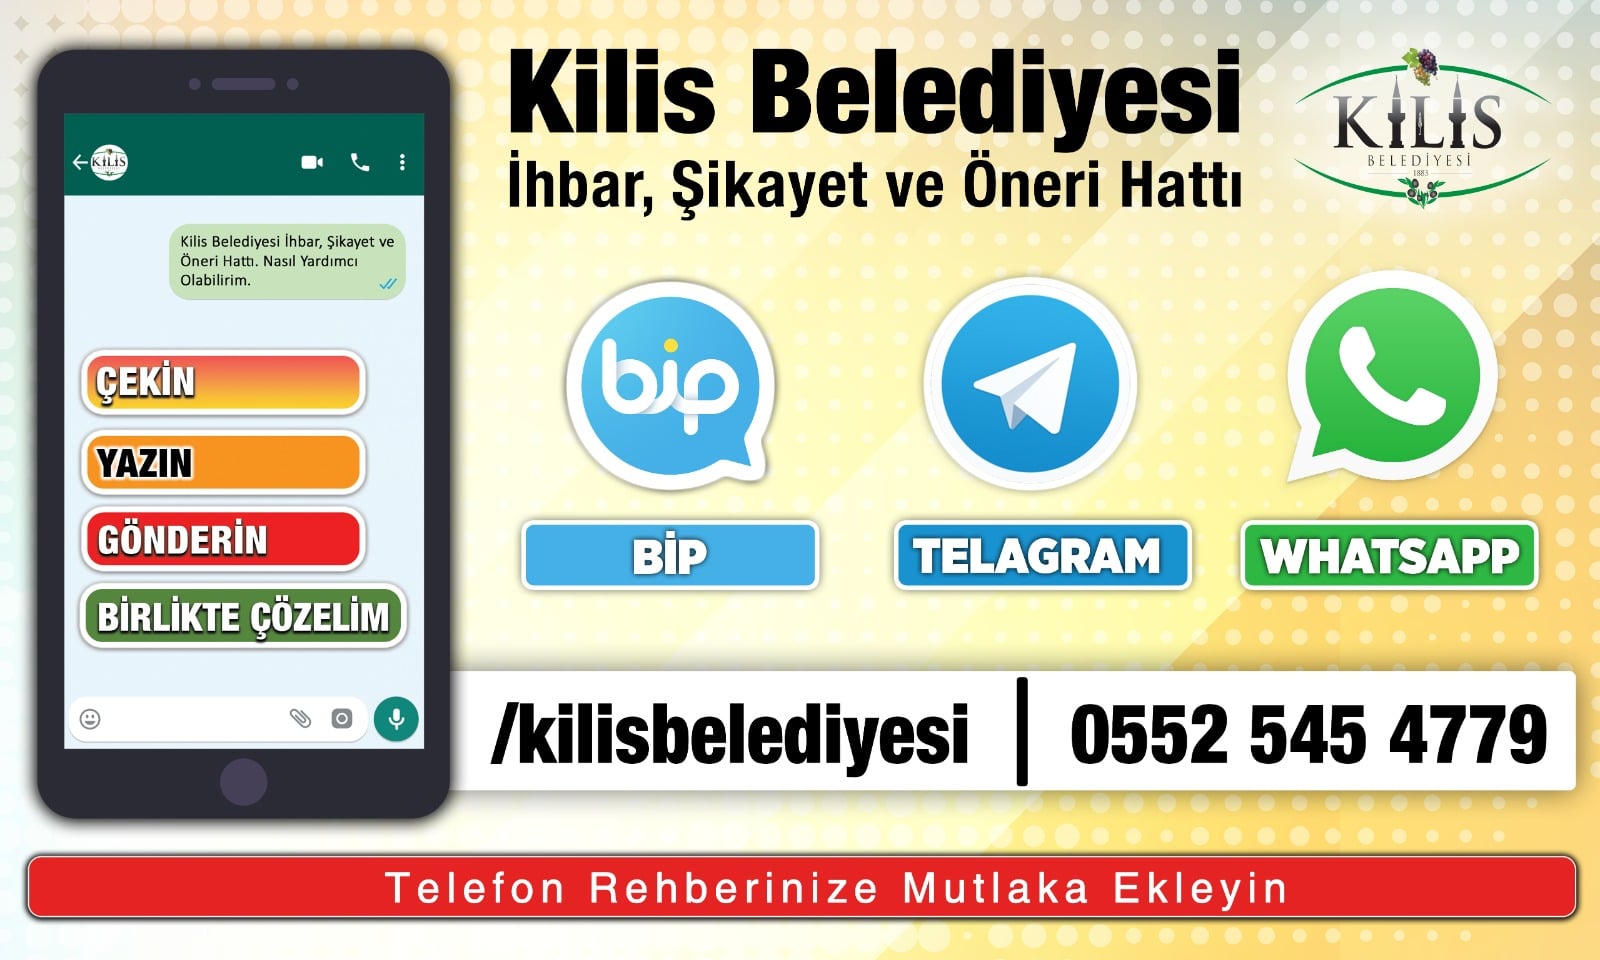 KİLİS BELEDİYESİ BİP VE TELEGRAM'DA